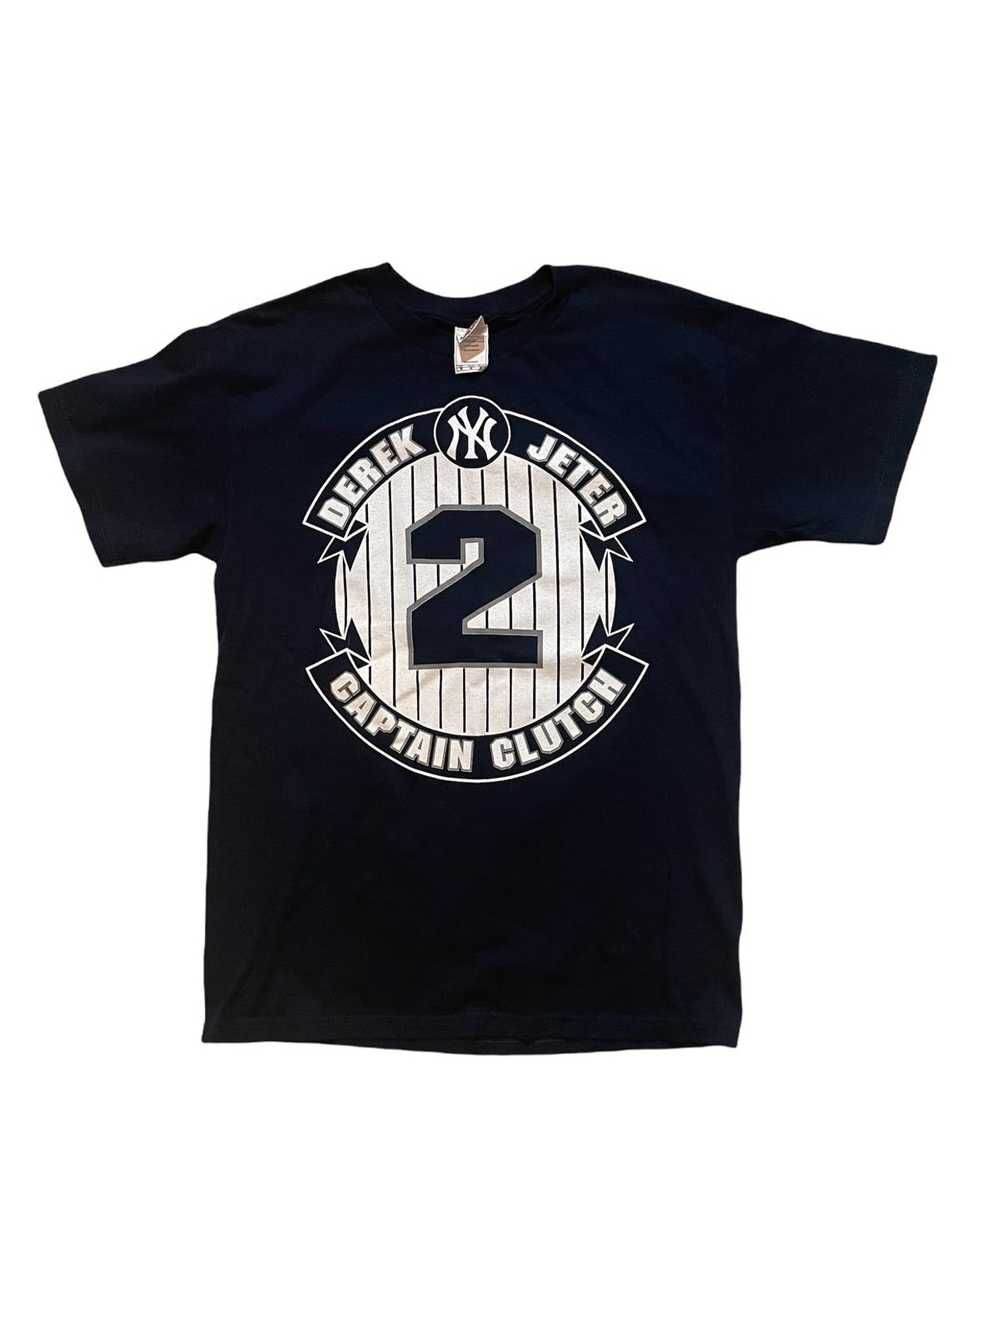 New York Yankees 1903 - 2023 120th Anniversary T-Shirt - Peanutstee